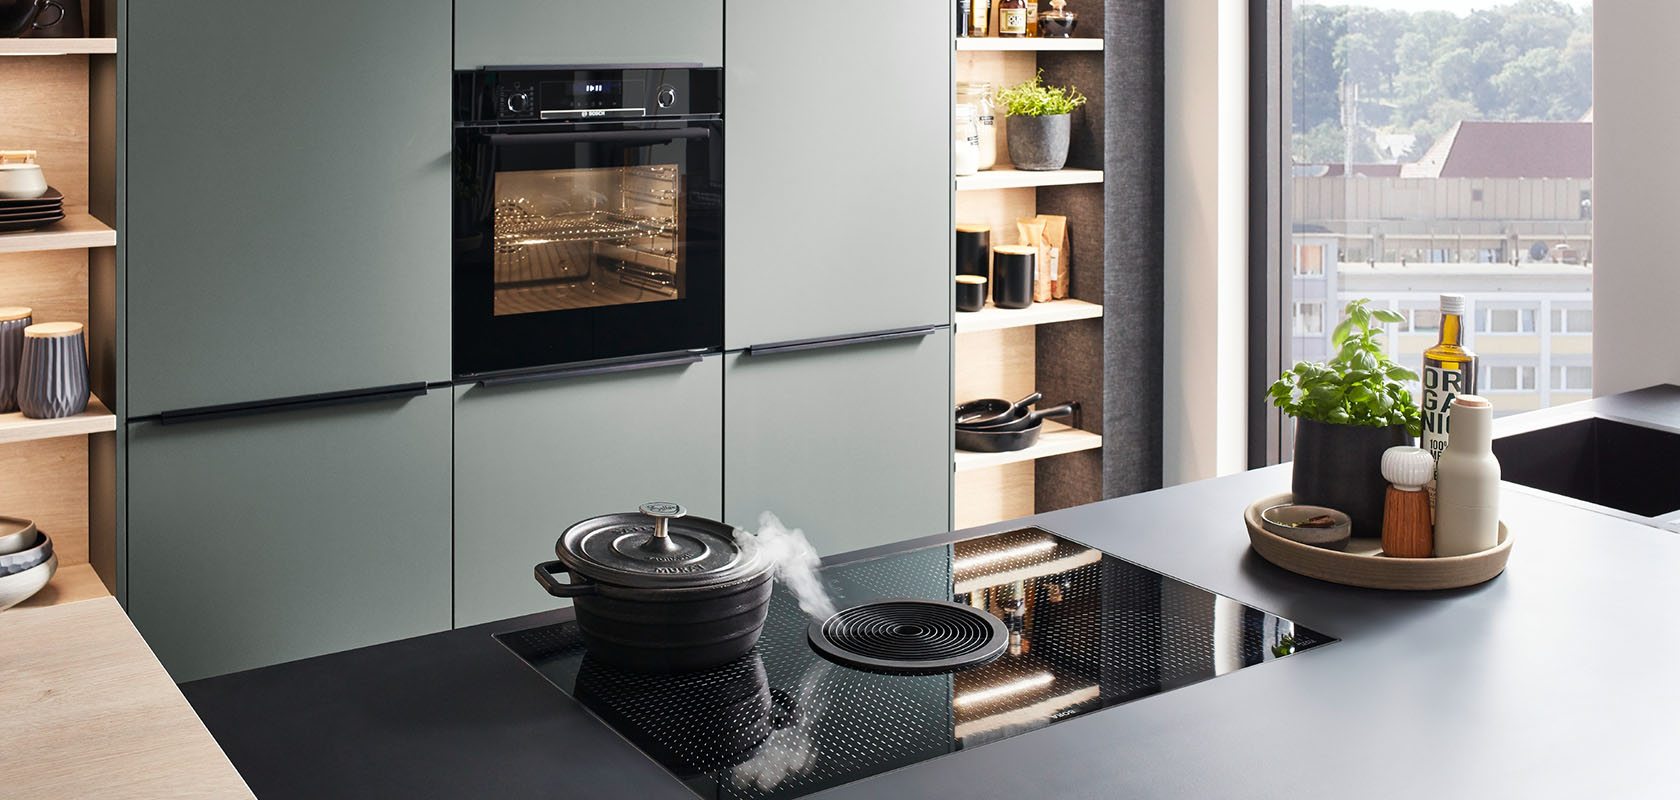 Interior de cocina moderna con elegantes gabinetes verdes, electrodomésticos integrados y una placa de inducción en una encimera oscura, que emana estilo y funcionalidad contemporáneos.